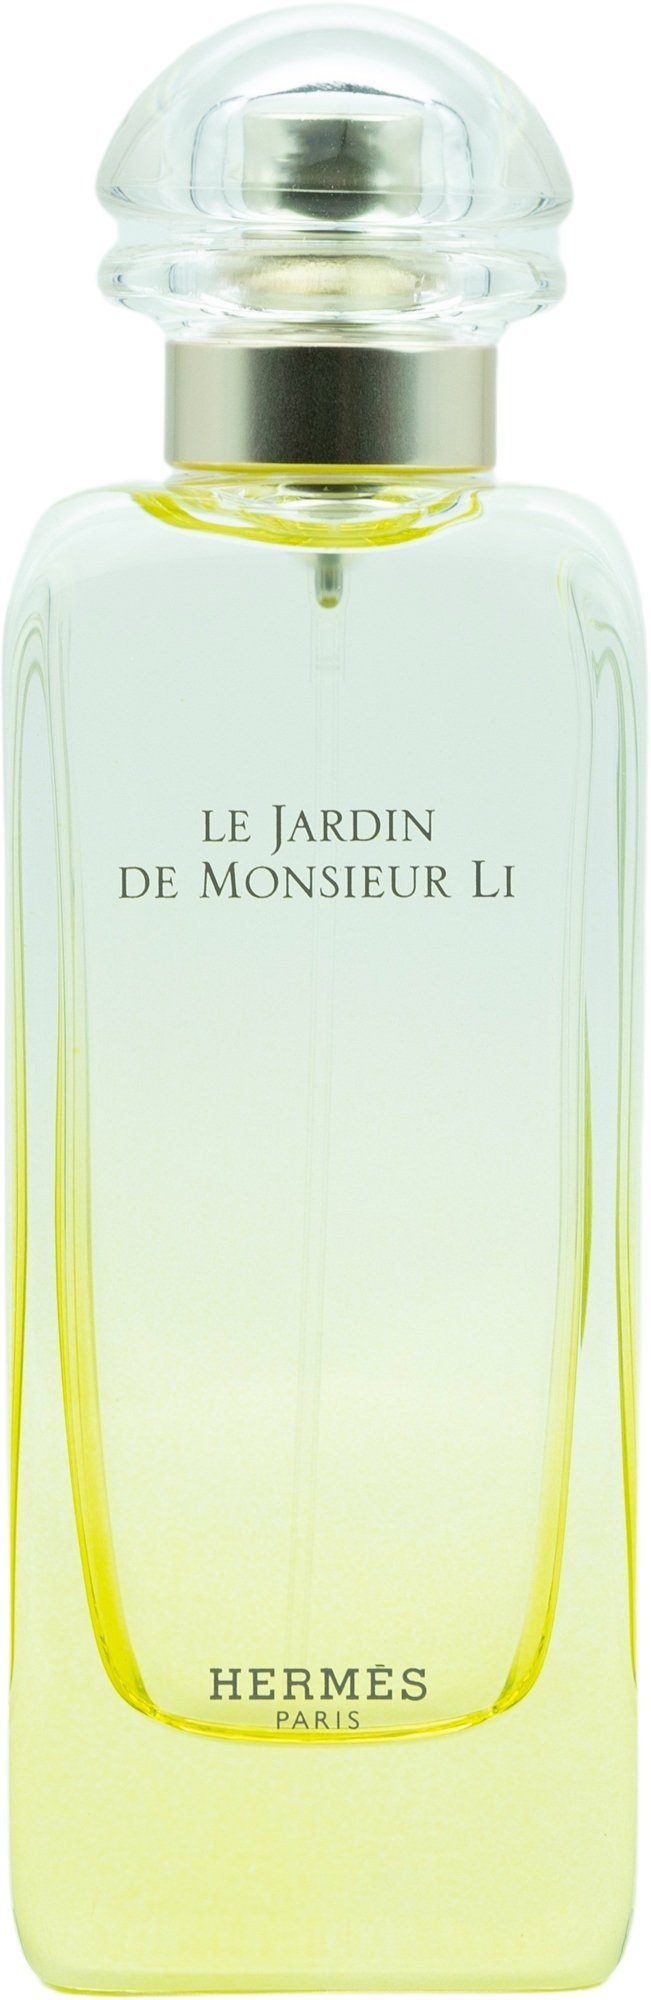 Bild von Le Jardin de Monsieur Li Eau de Toilette 100 ml